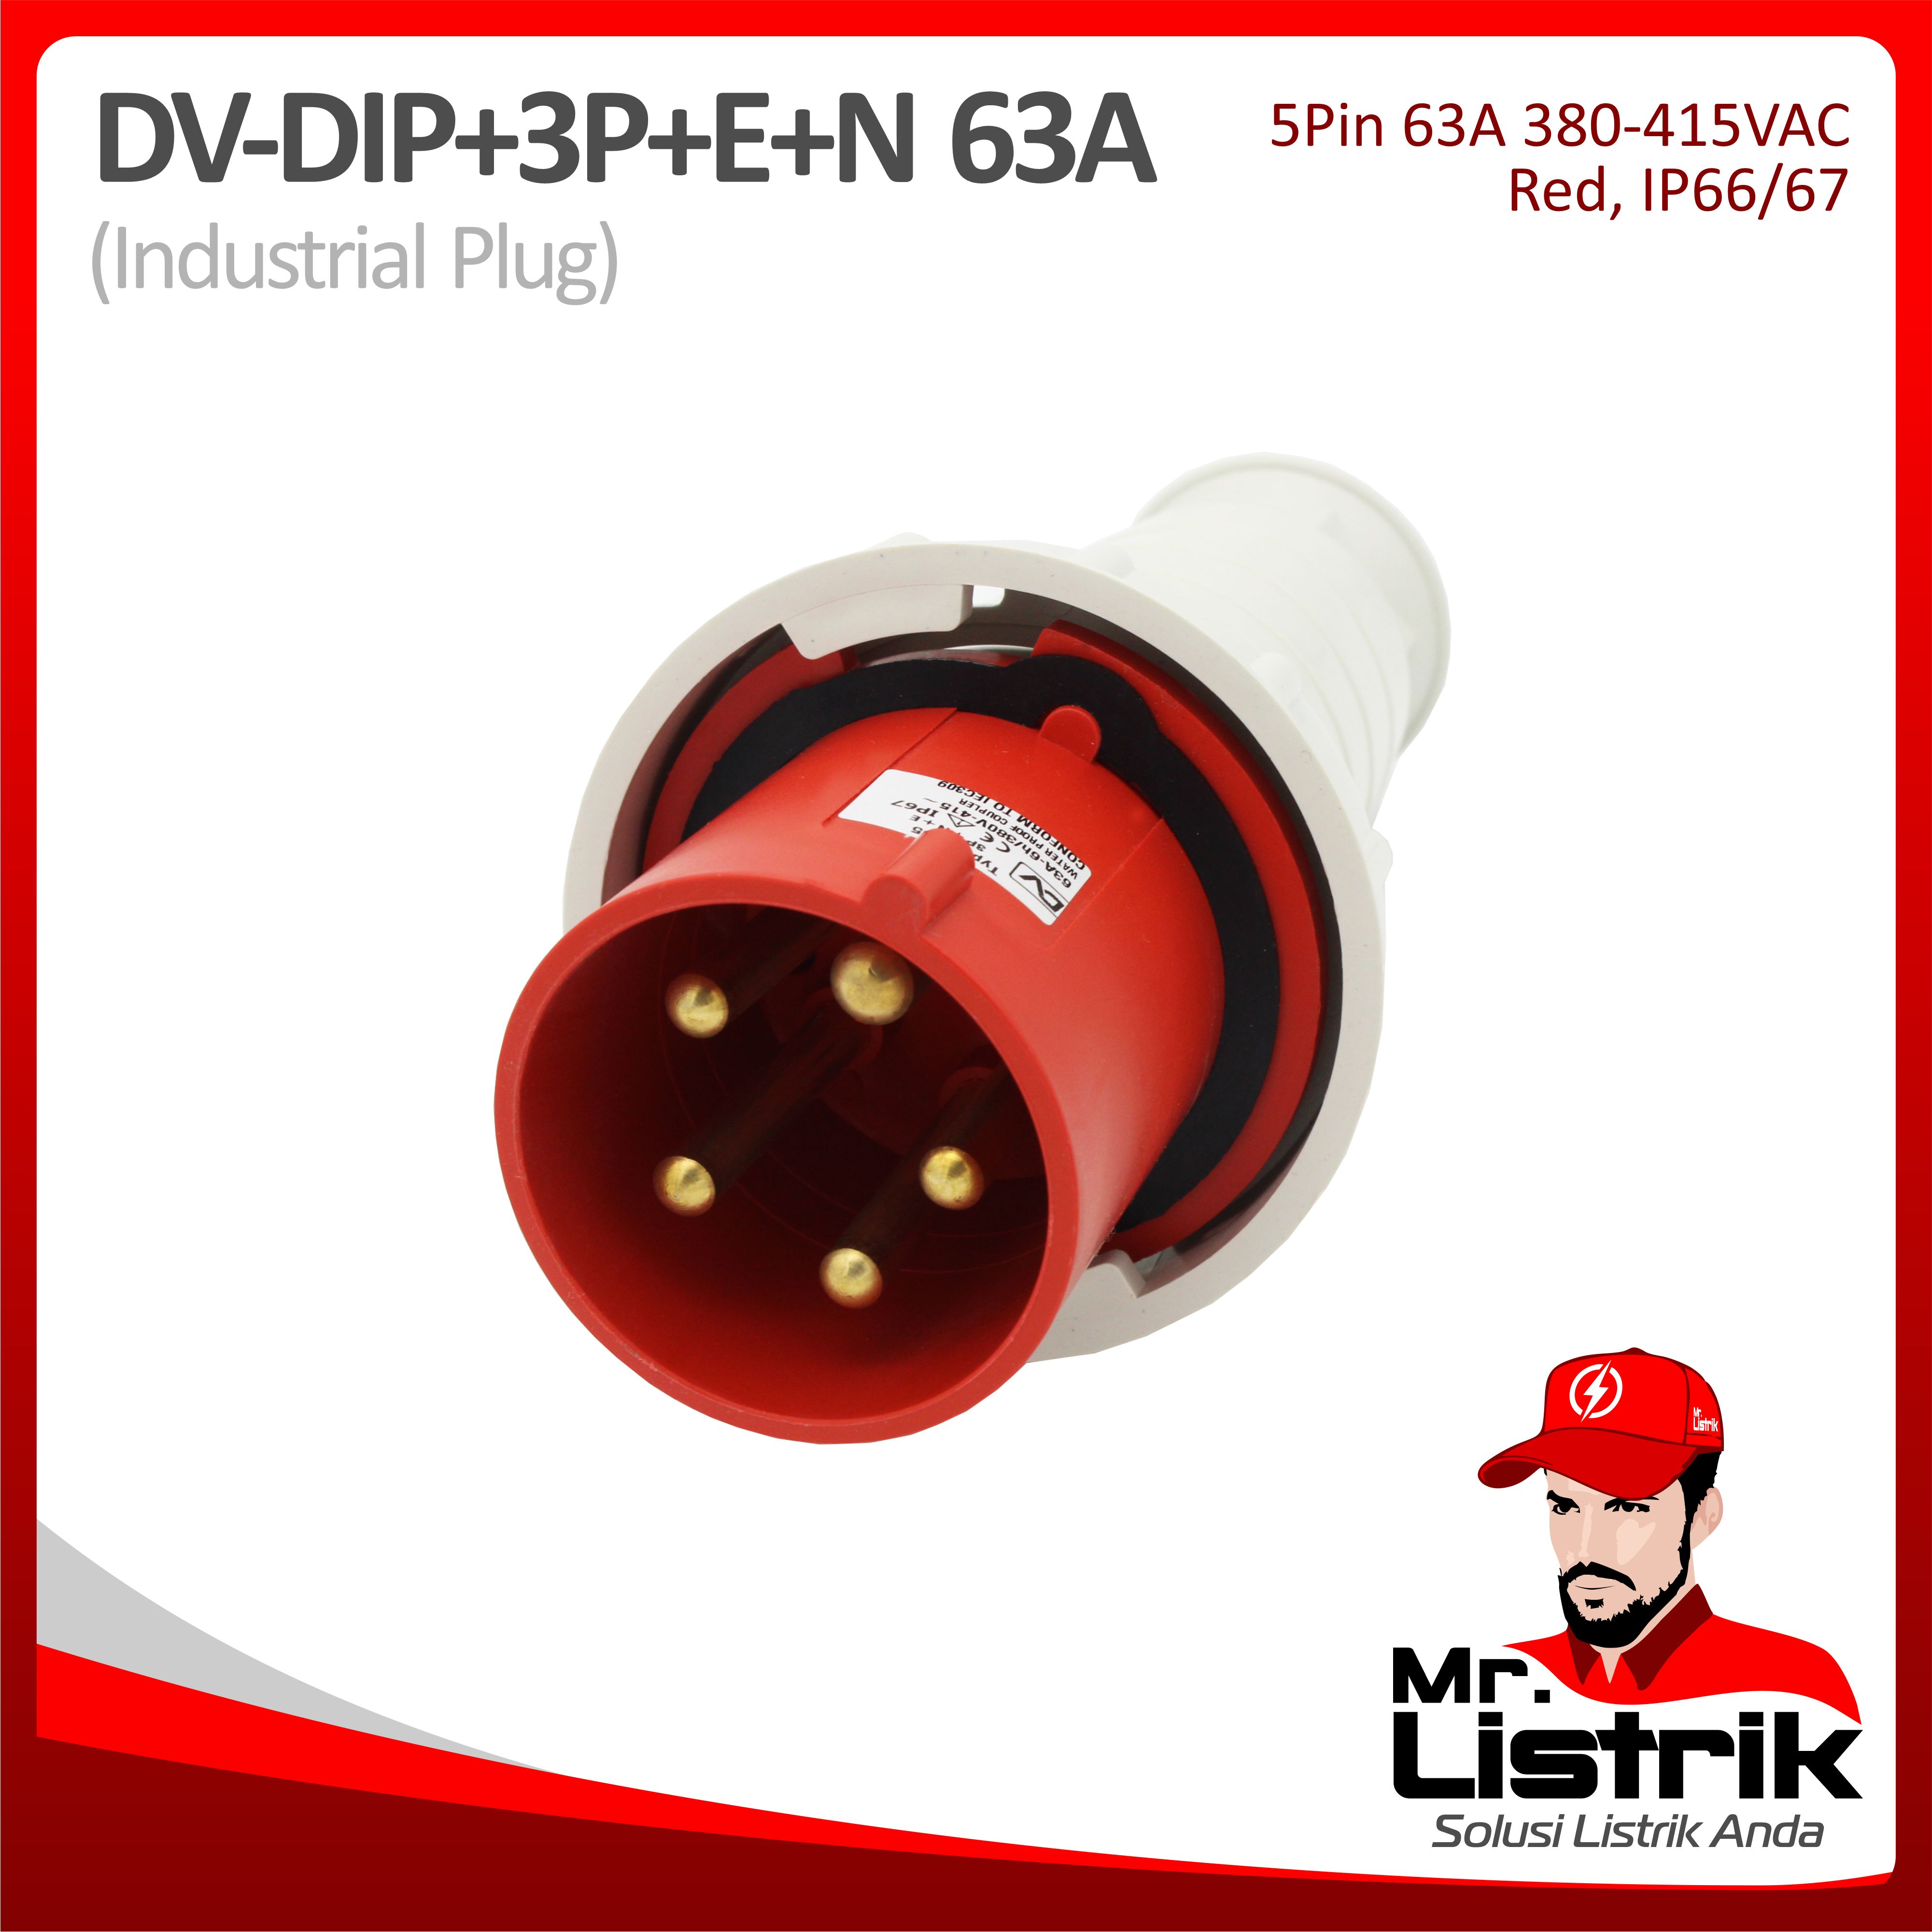 Industrial Plug 5 Pin 63A DV DIP-3P+E+N-63A